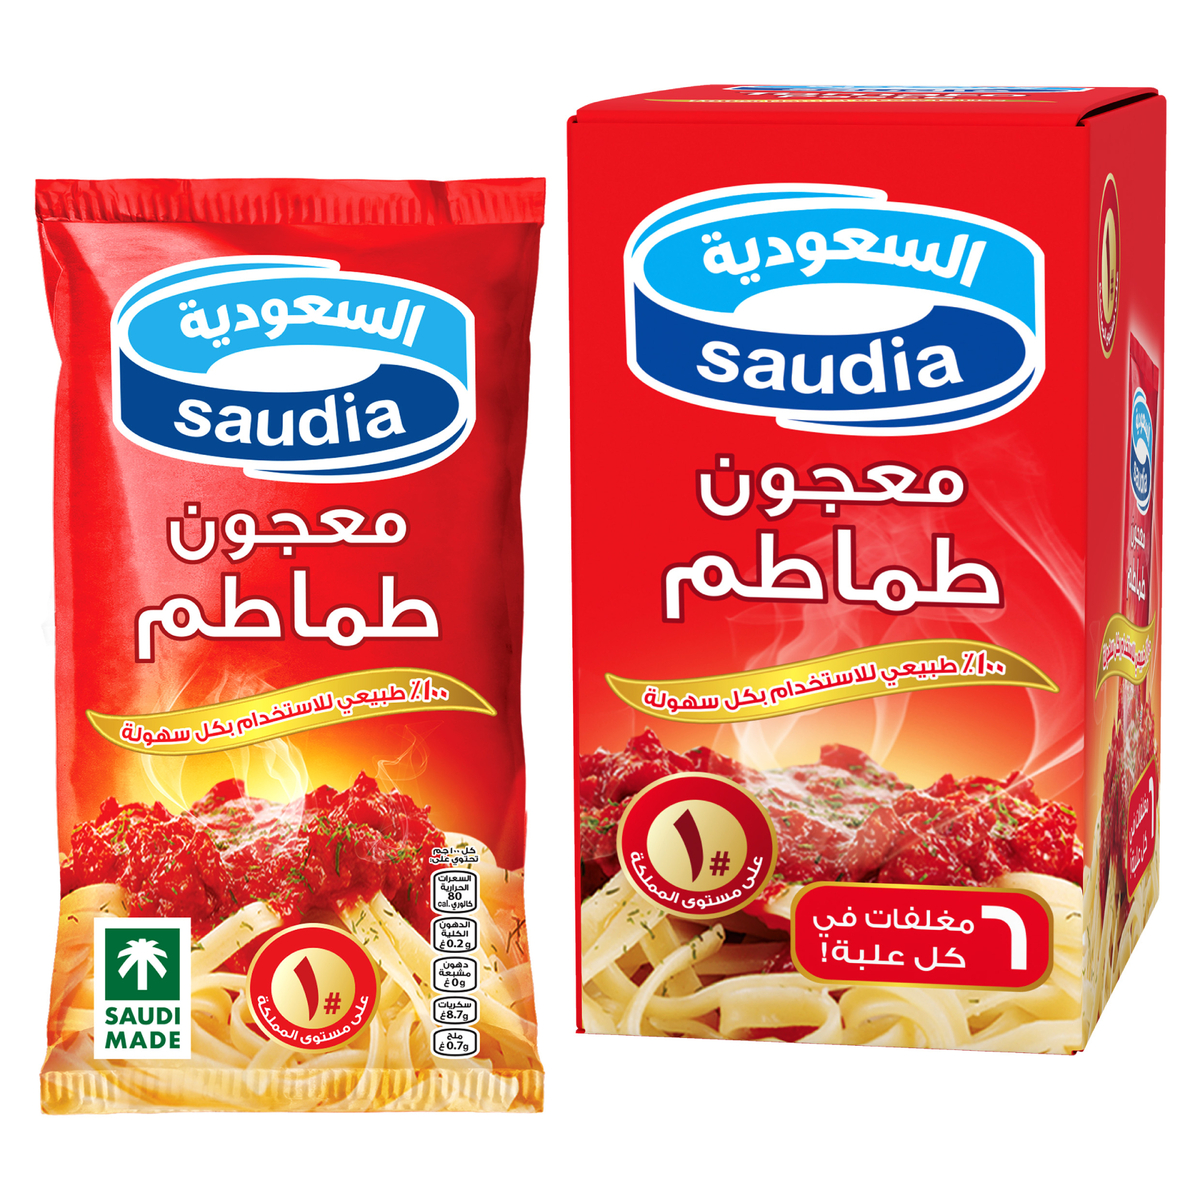 Saudia Tomato Paste 60g